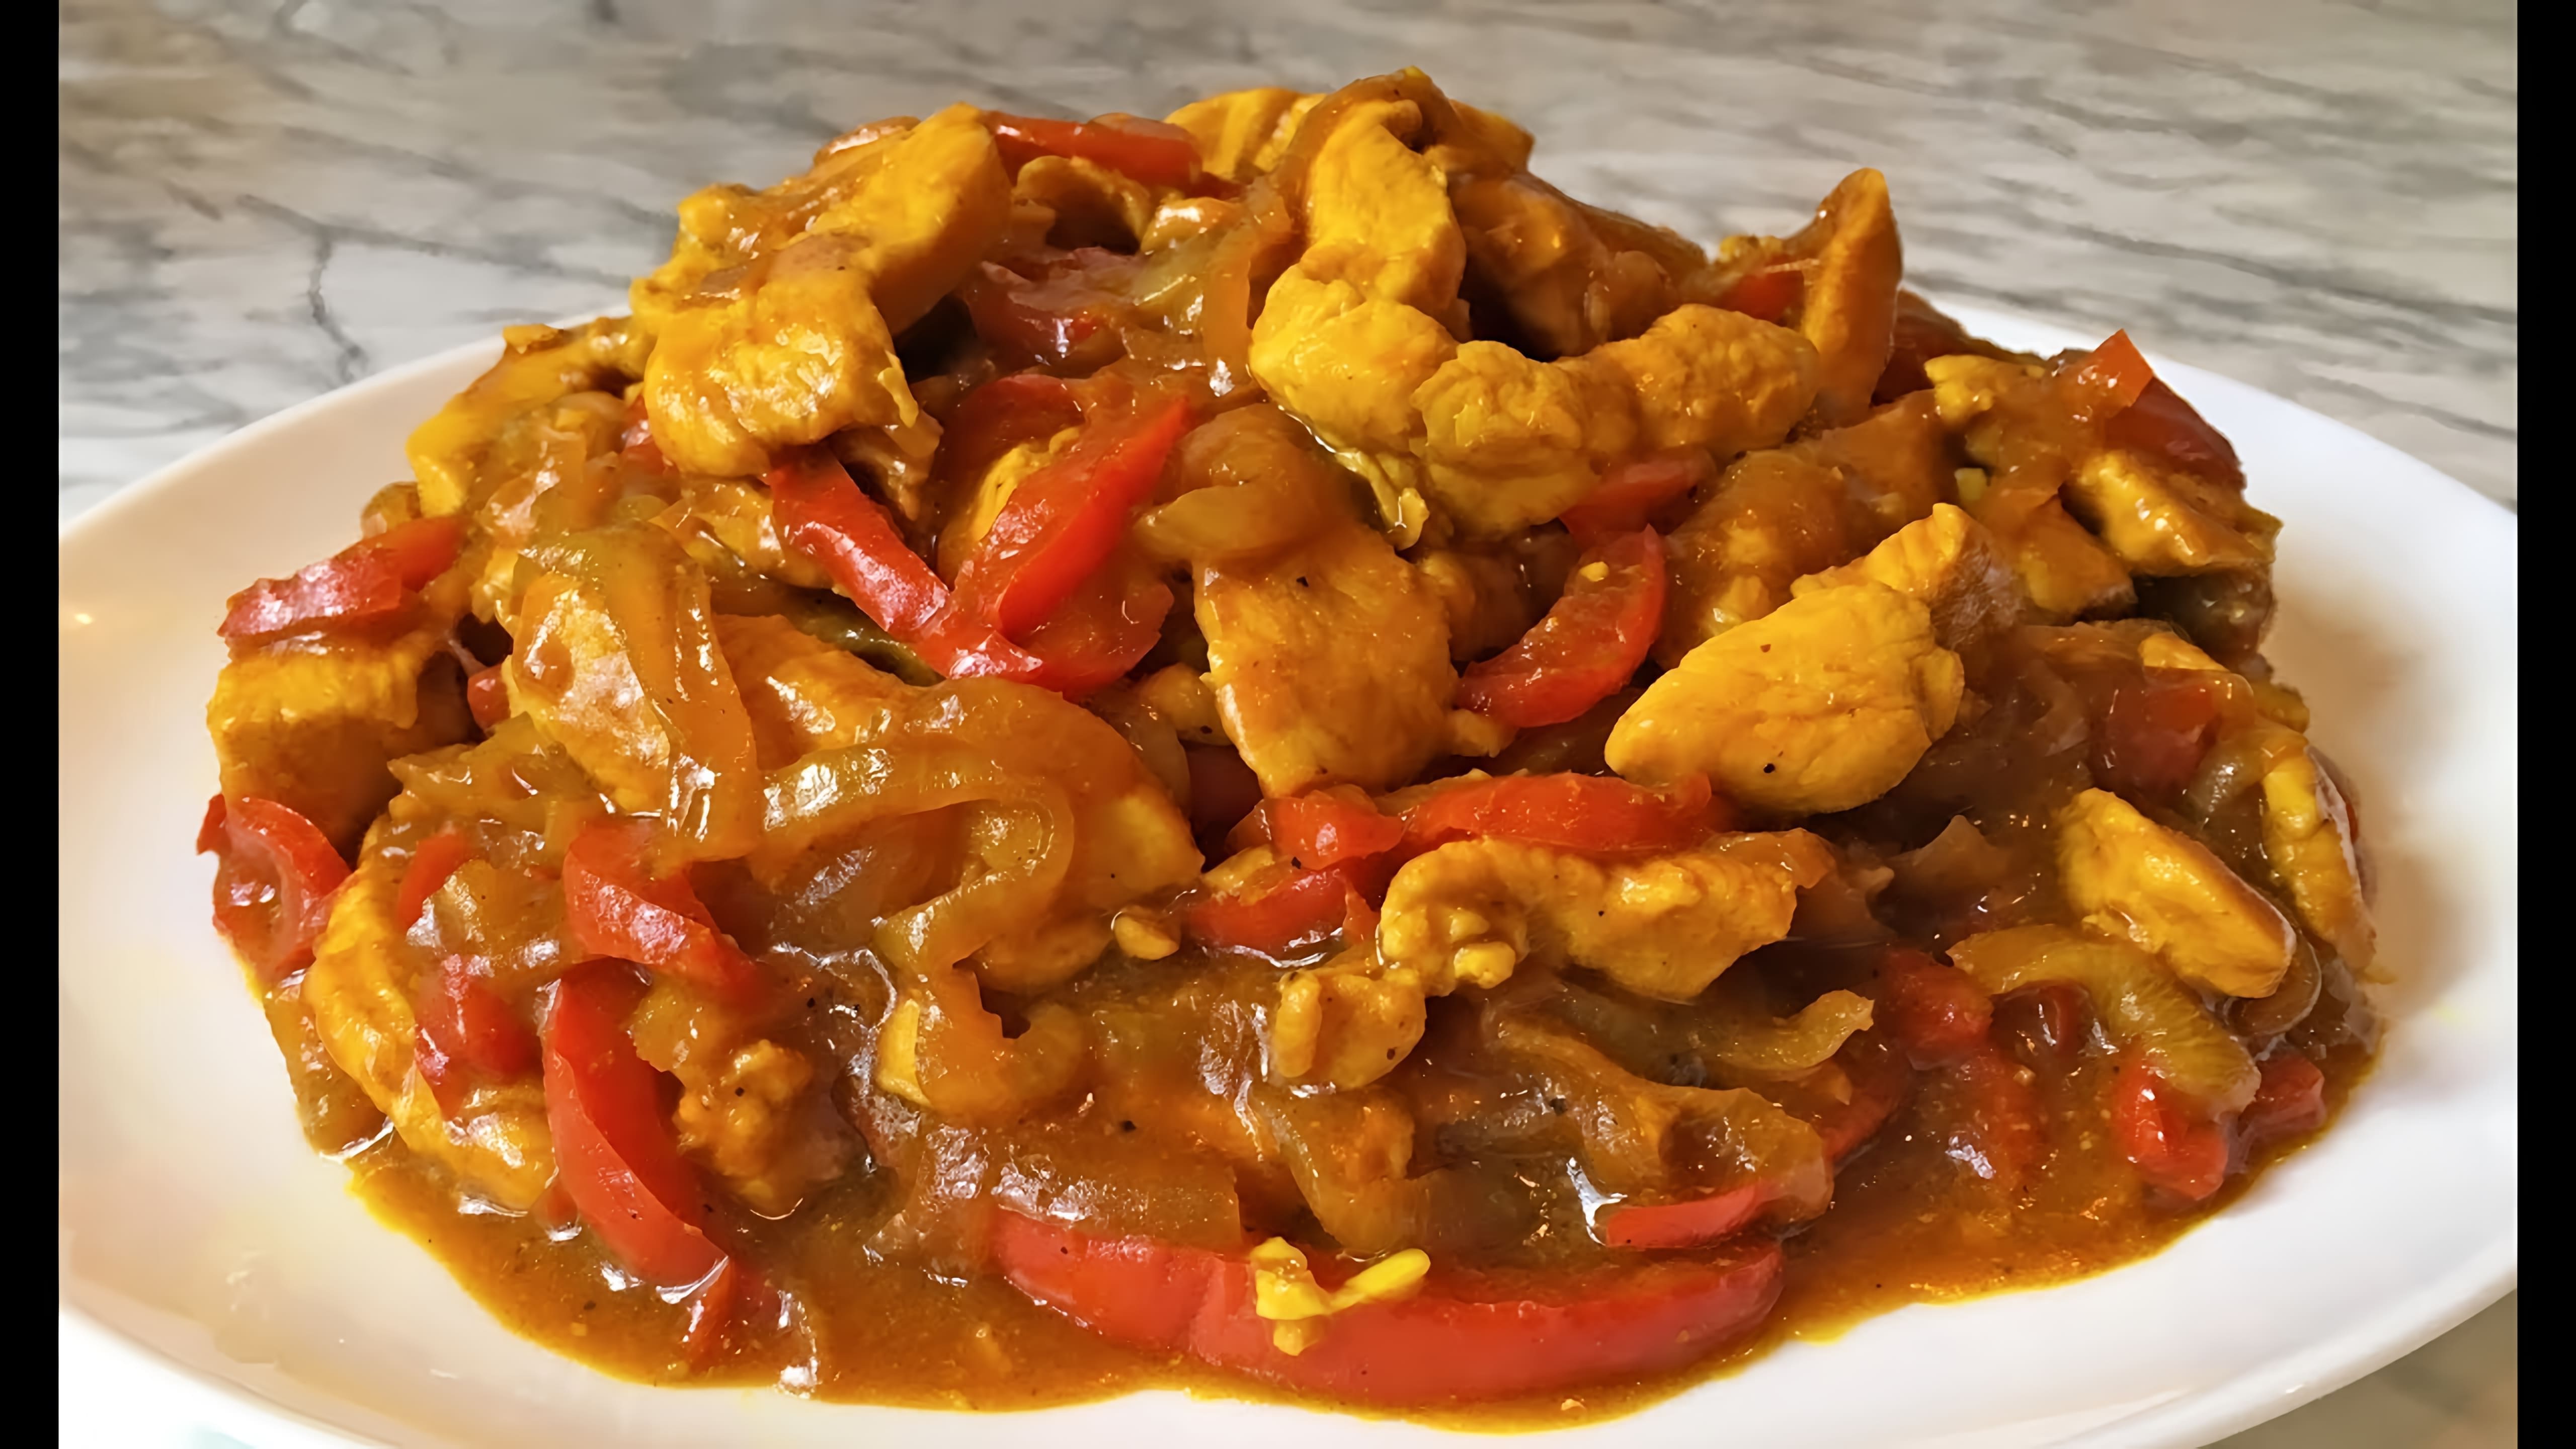 В этом видео демонстрируется рецепт приготовления курицы по-тайски